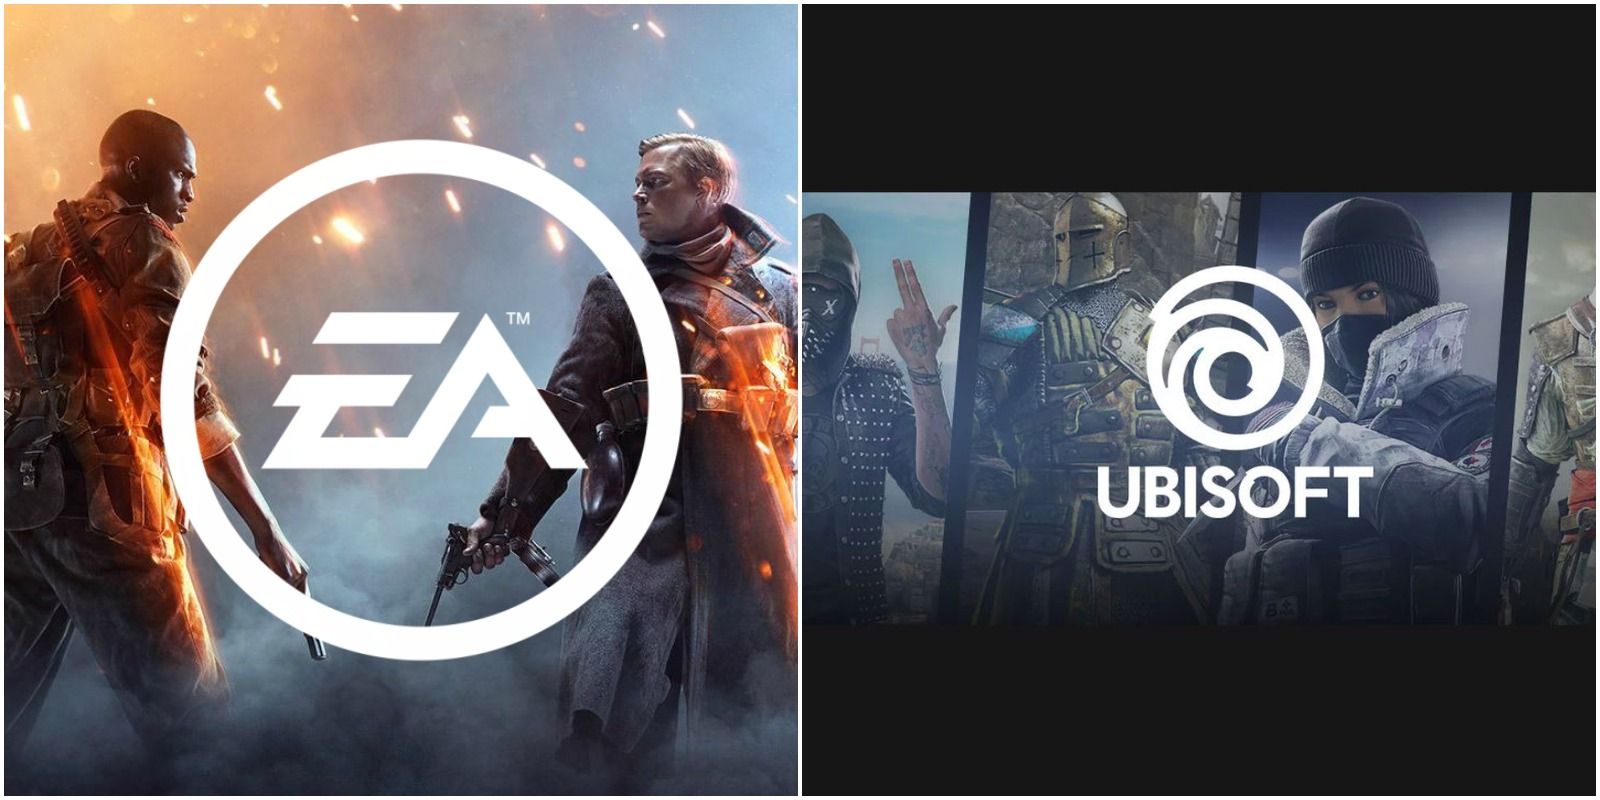 Electronic Arts and Ubisoft